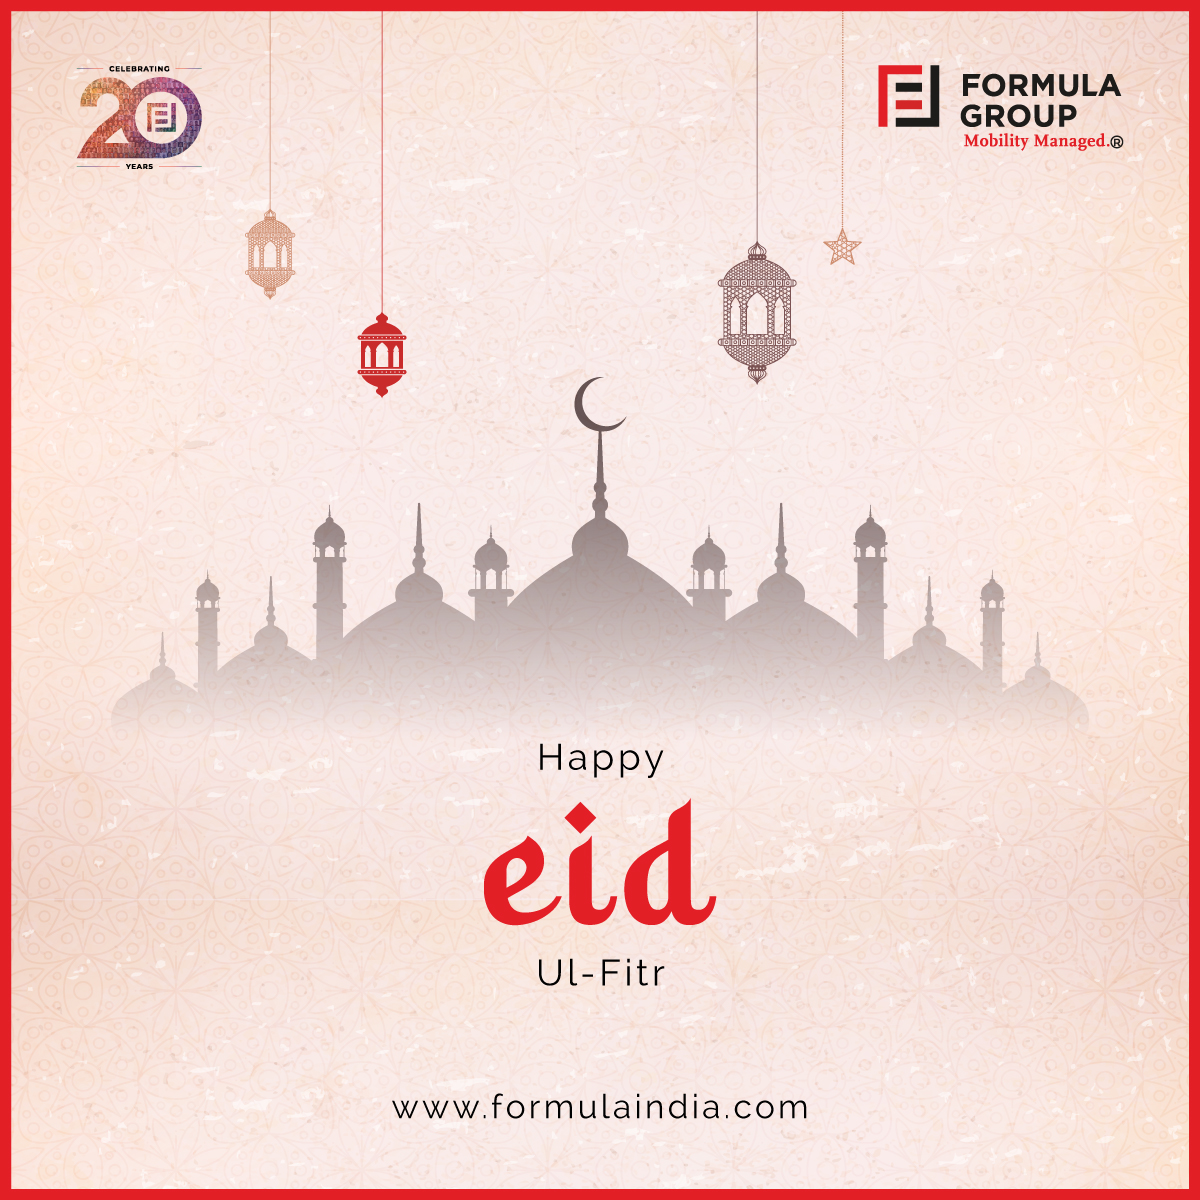 Eid Mubarak! Celebrate with Joy

Wishing you and your loved ones a blessed Eid filled with happiness, love, and abundance. Eid Mubarak! 🌟🌙

#EidMubarak #FestivalOfBreaksFast #CelebrateWithJoy #UnityInDiversity  #CelebratingEid #Community #Gratitude #FormulaGroup